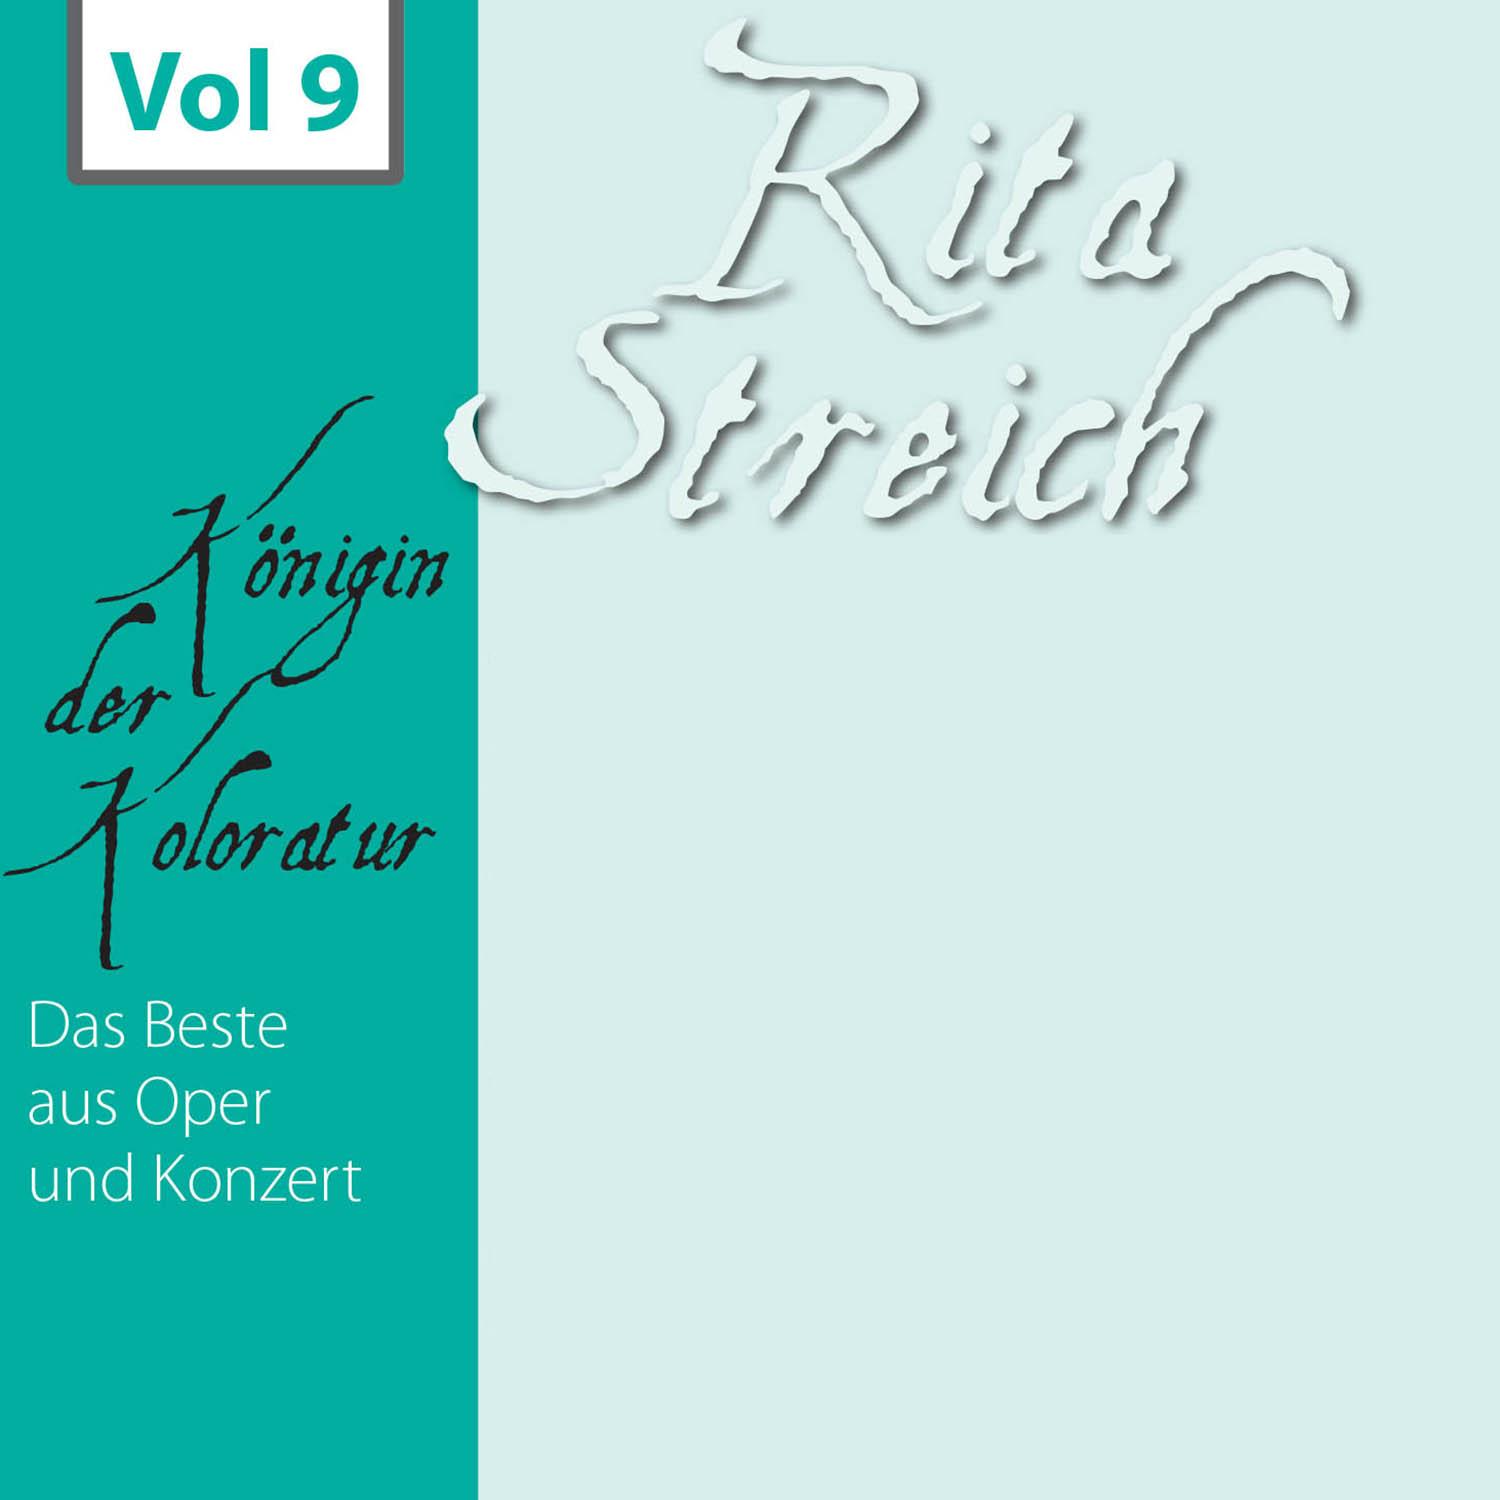 Rita Streich  K nigin der Koloratur, Vol. 9